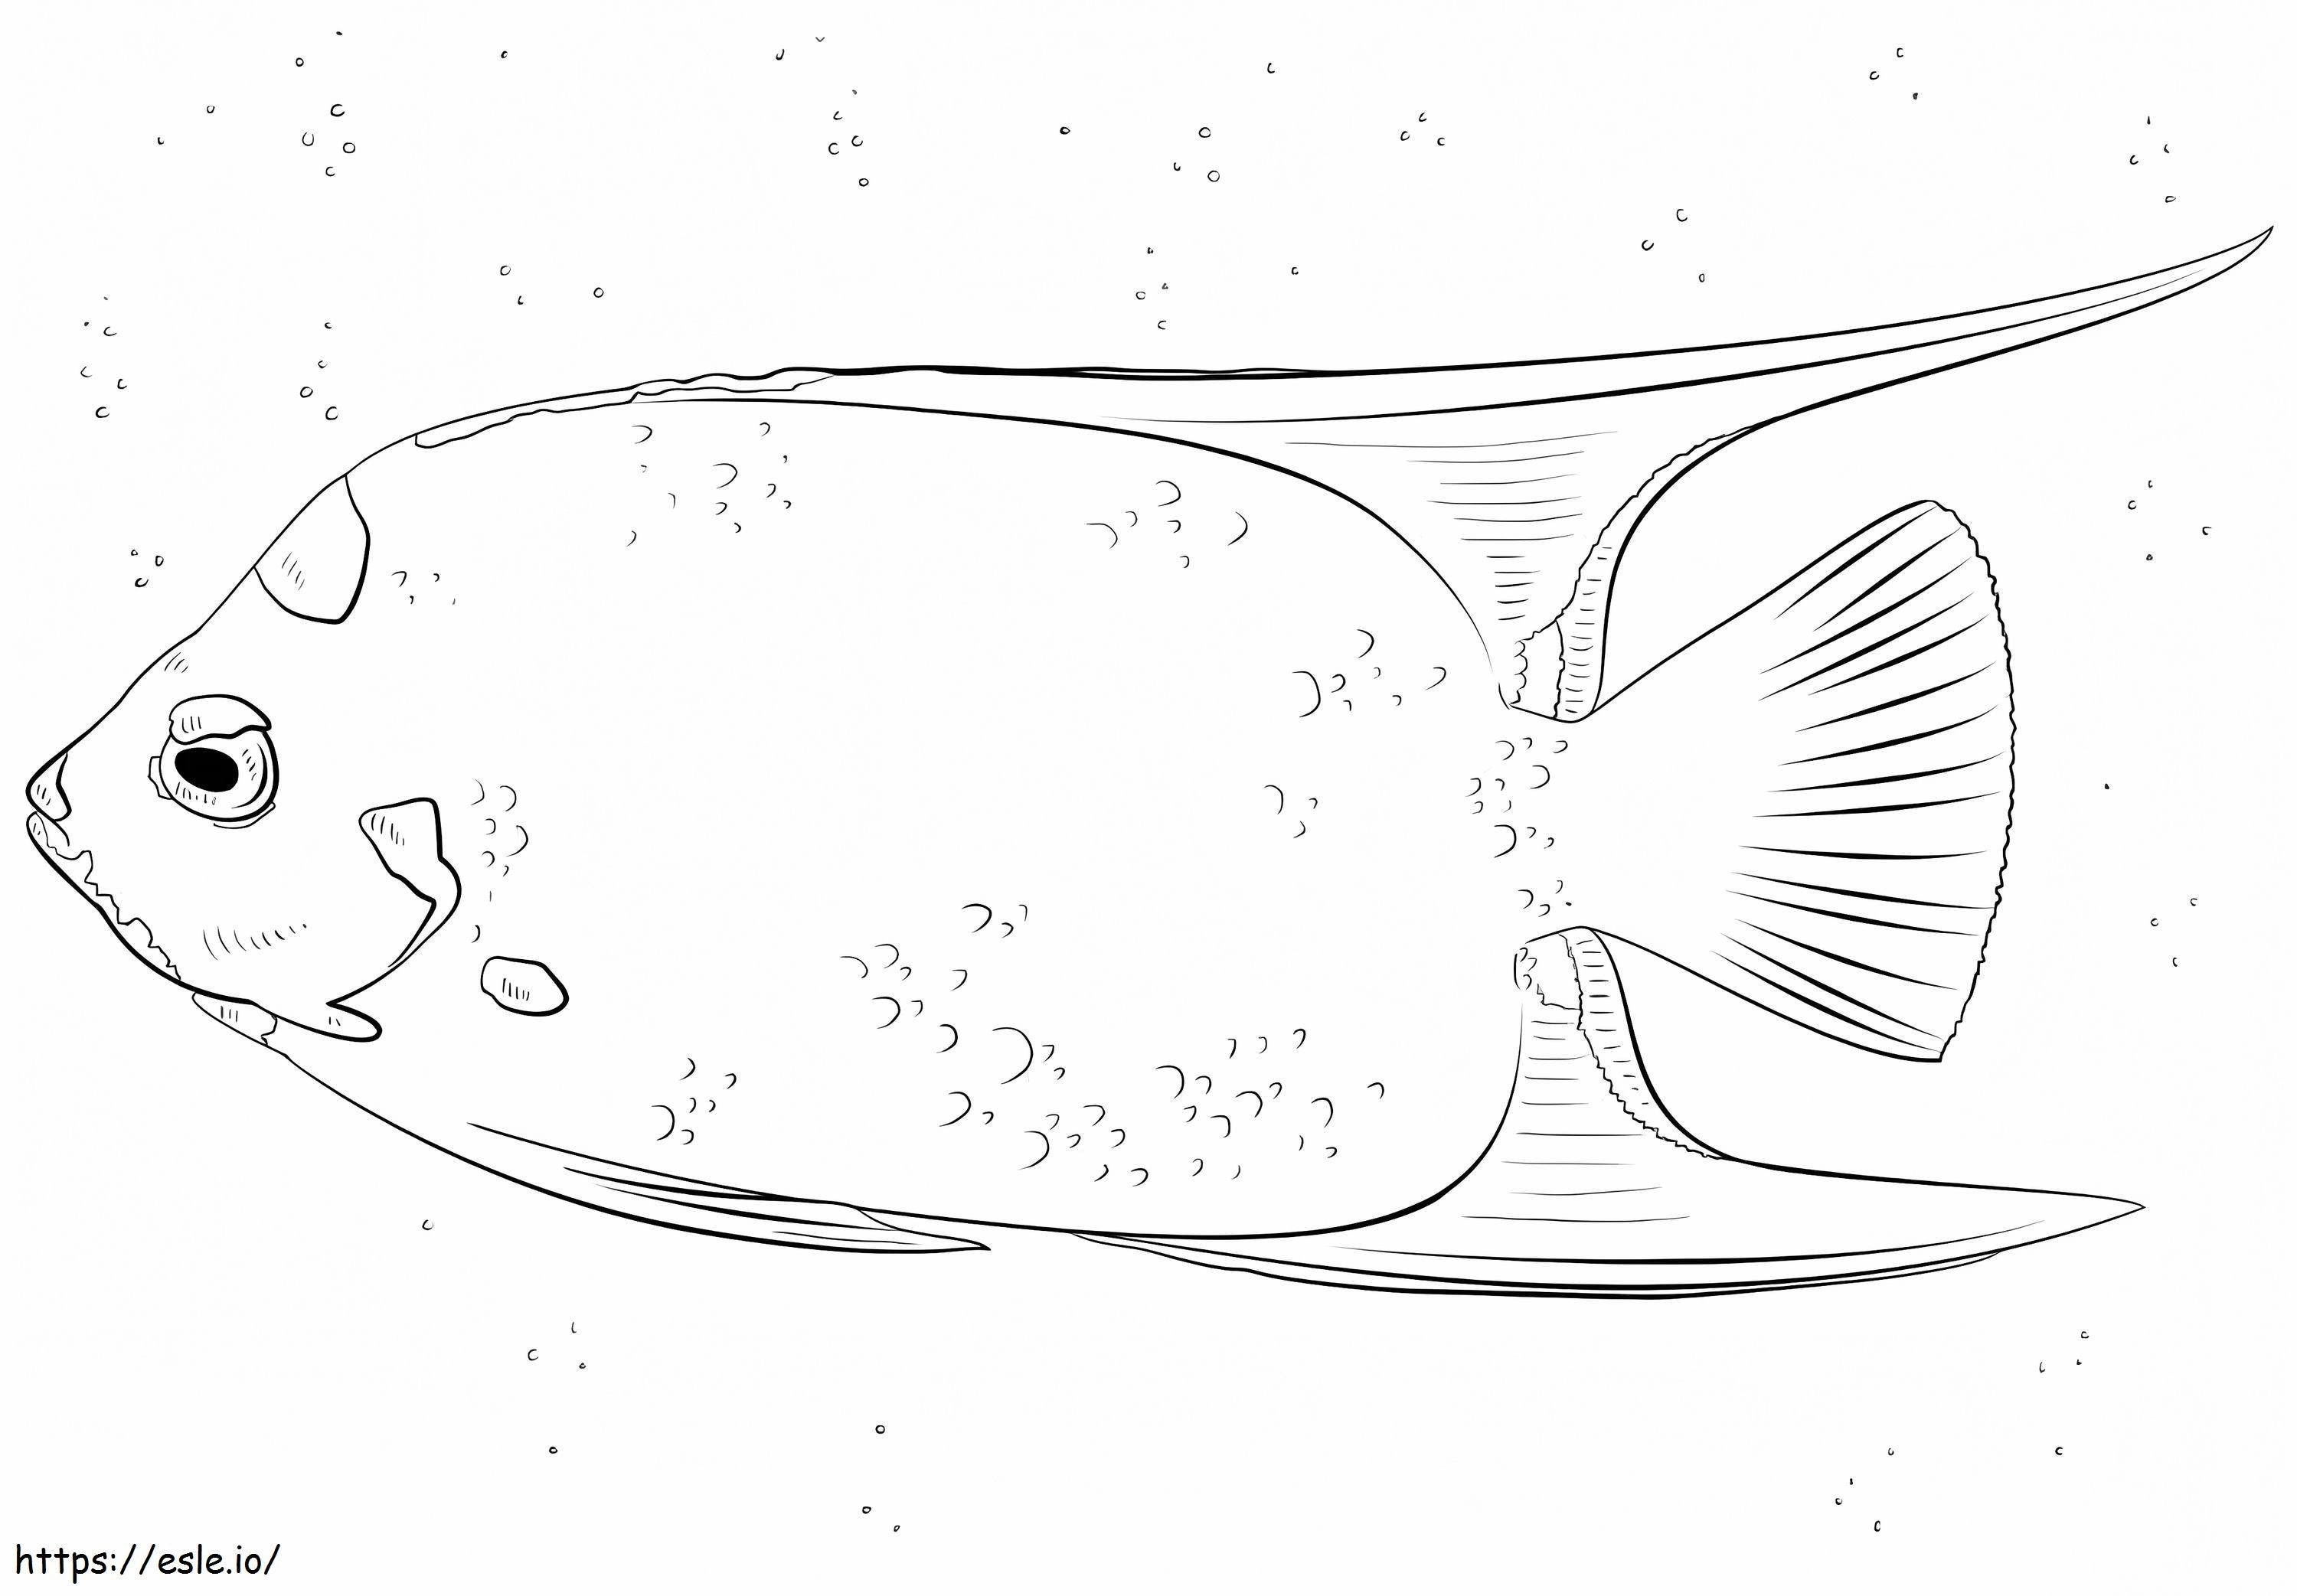 Königin-Kaiserfisch ausmalbilder